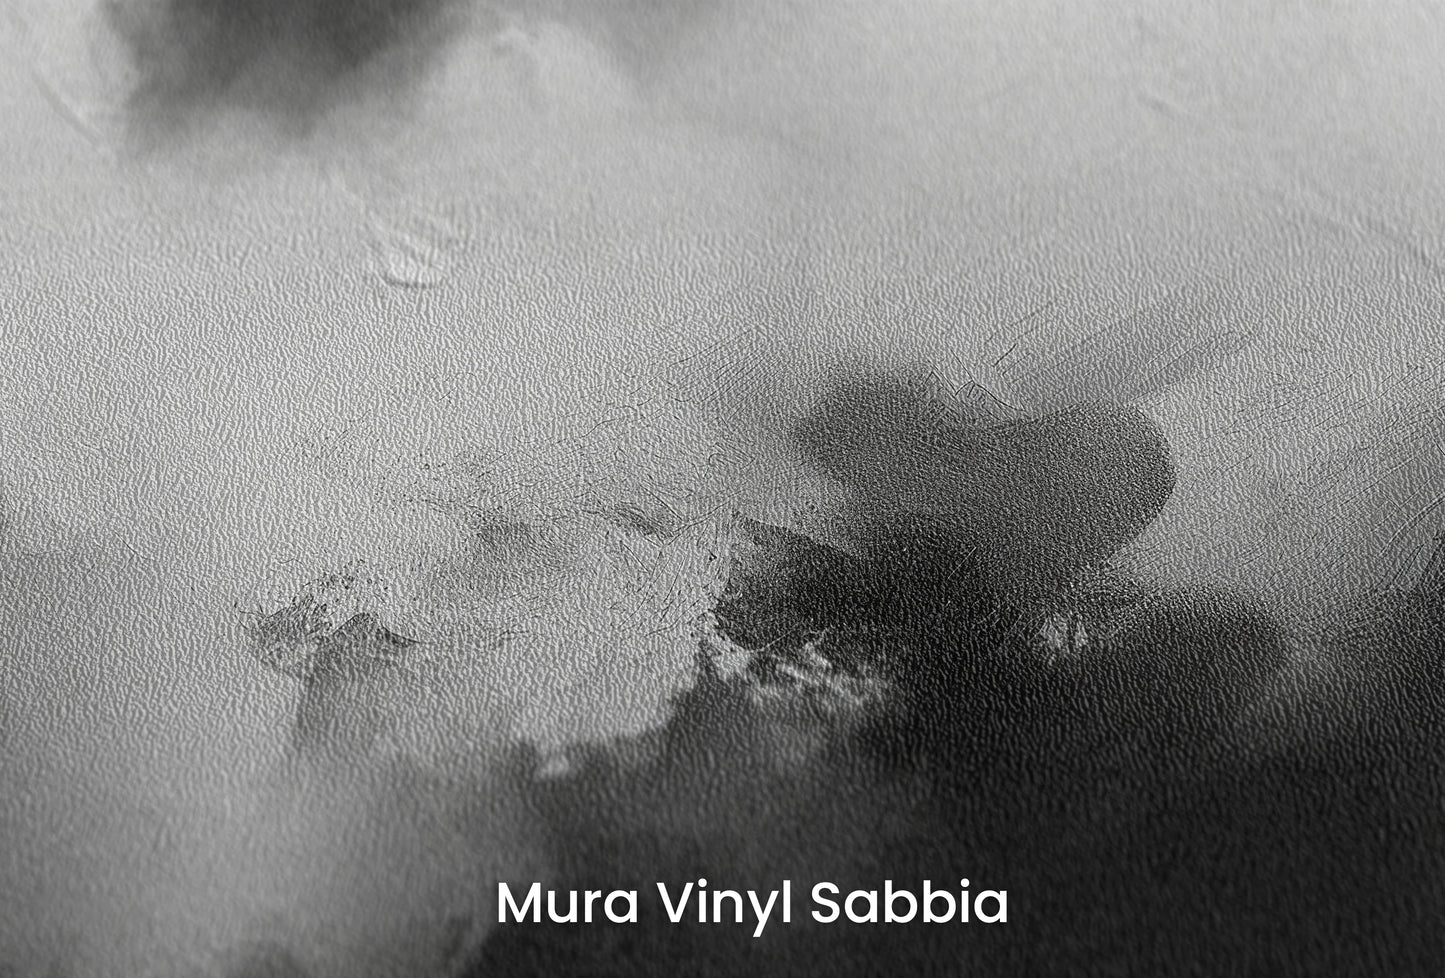 Zbliżenie na artystyczną fototapetę o nazwie Silver Lining na podłożu Mura Vinyl Sabbia struktura grubego ziarna piasku.